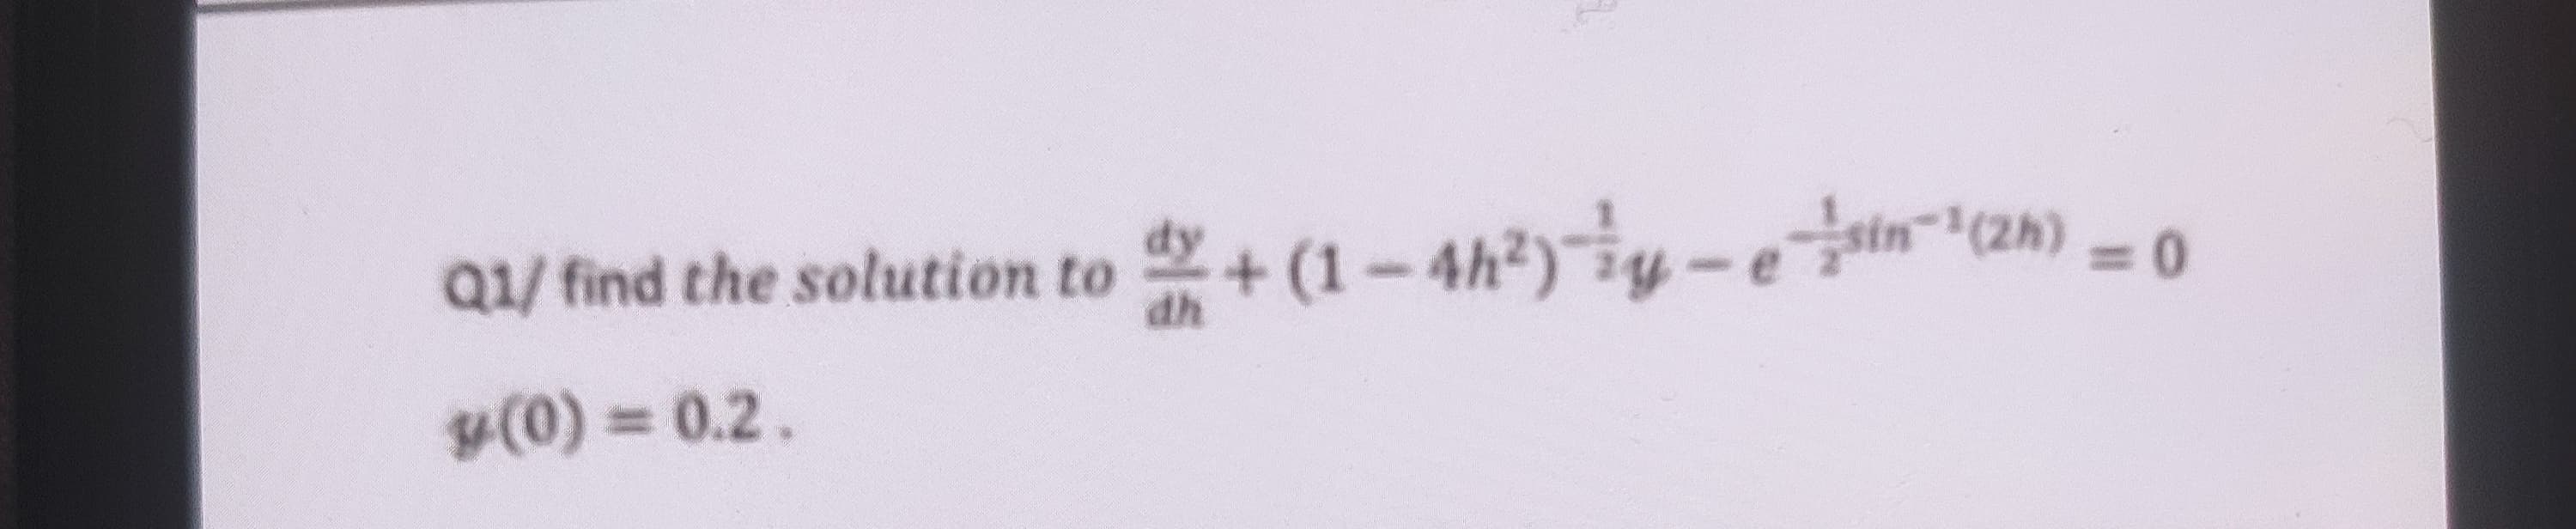 Q1/ find the solution to + (1-4h?)y-ein(2n) -0
%3D
y(0) = 0.2.
